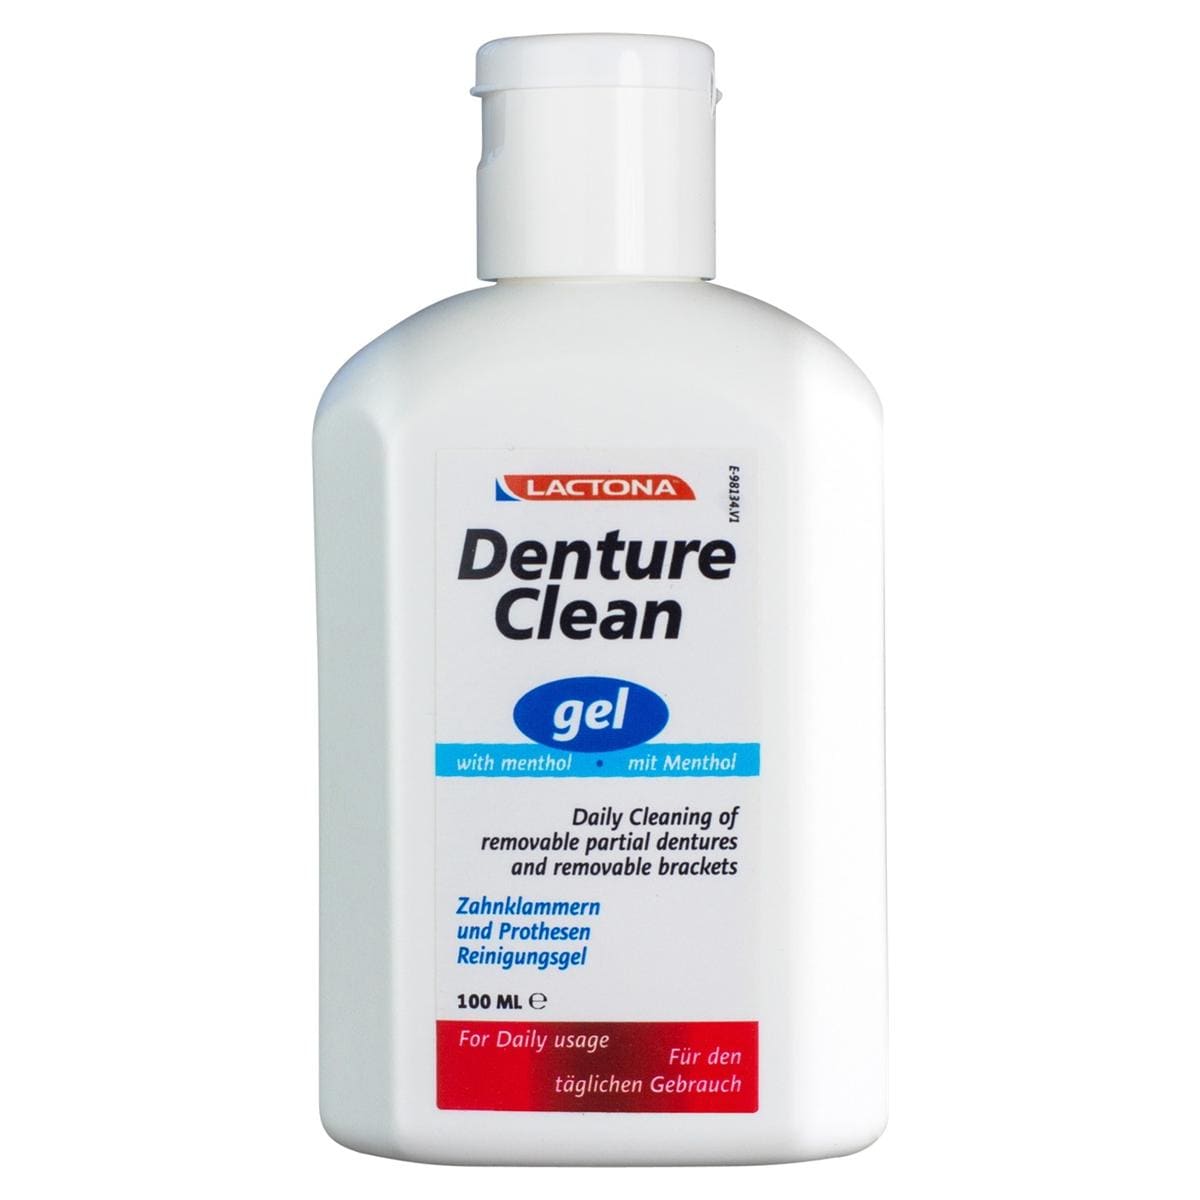 Denture Clean - Gel, 100 ml